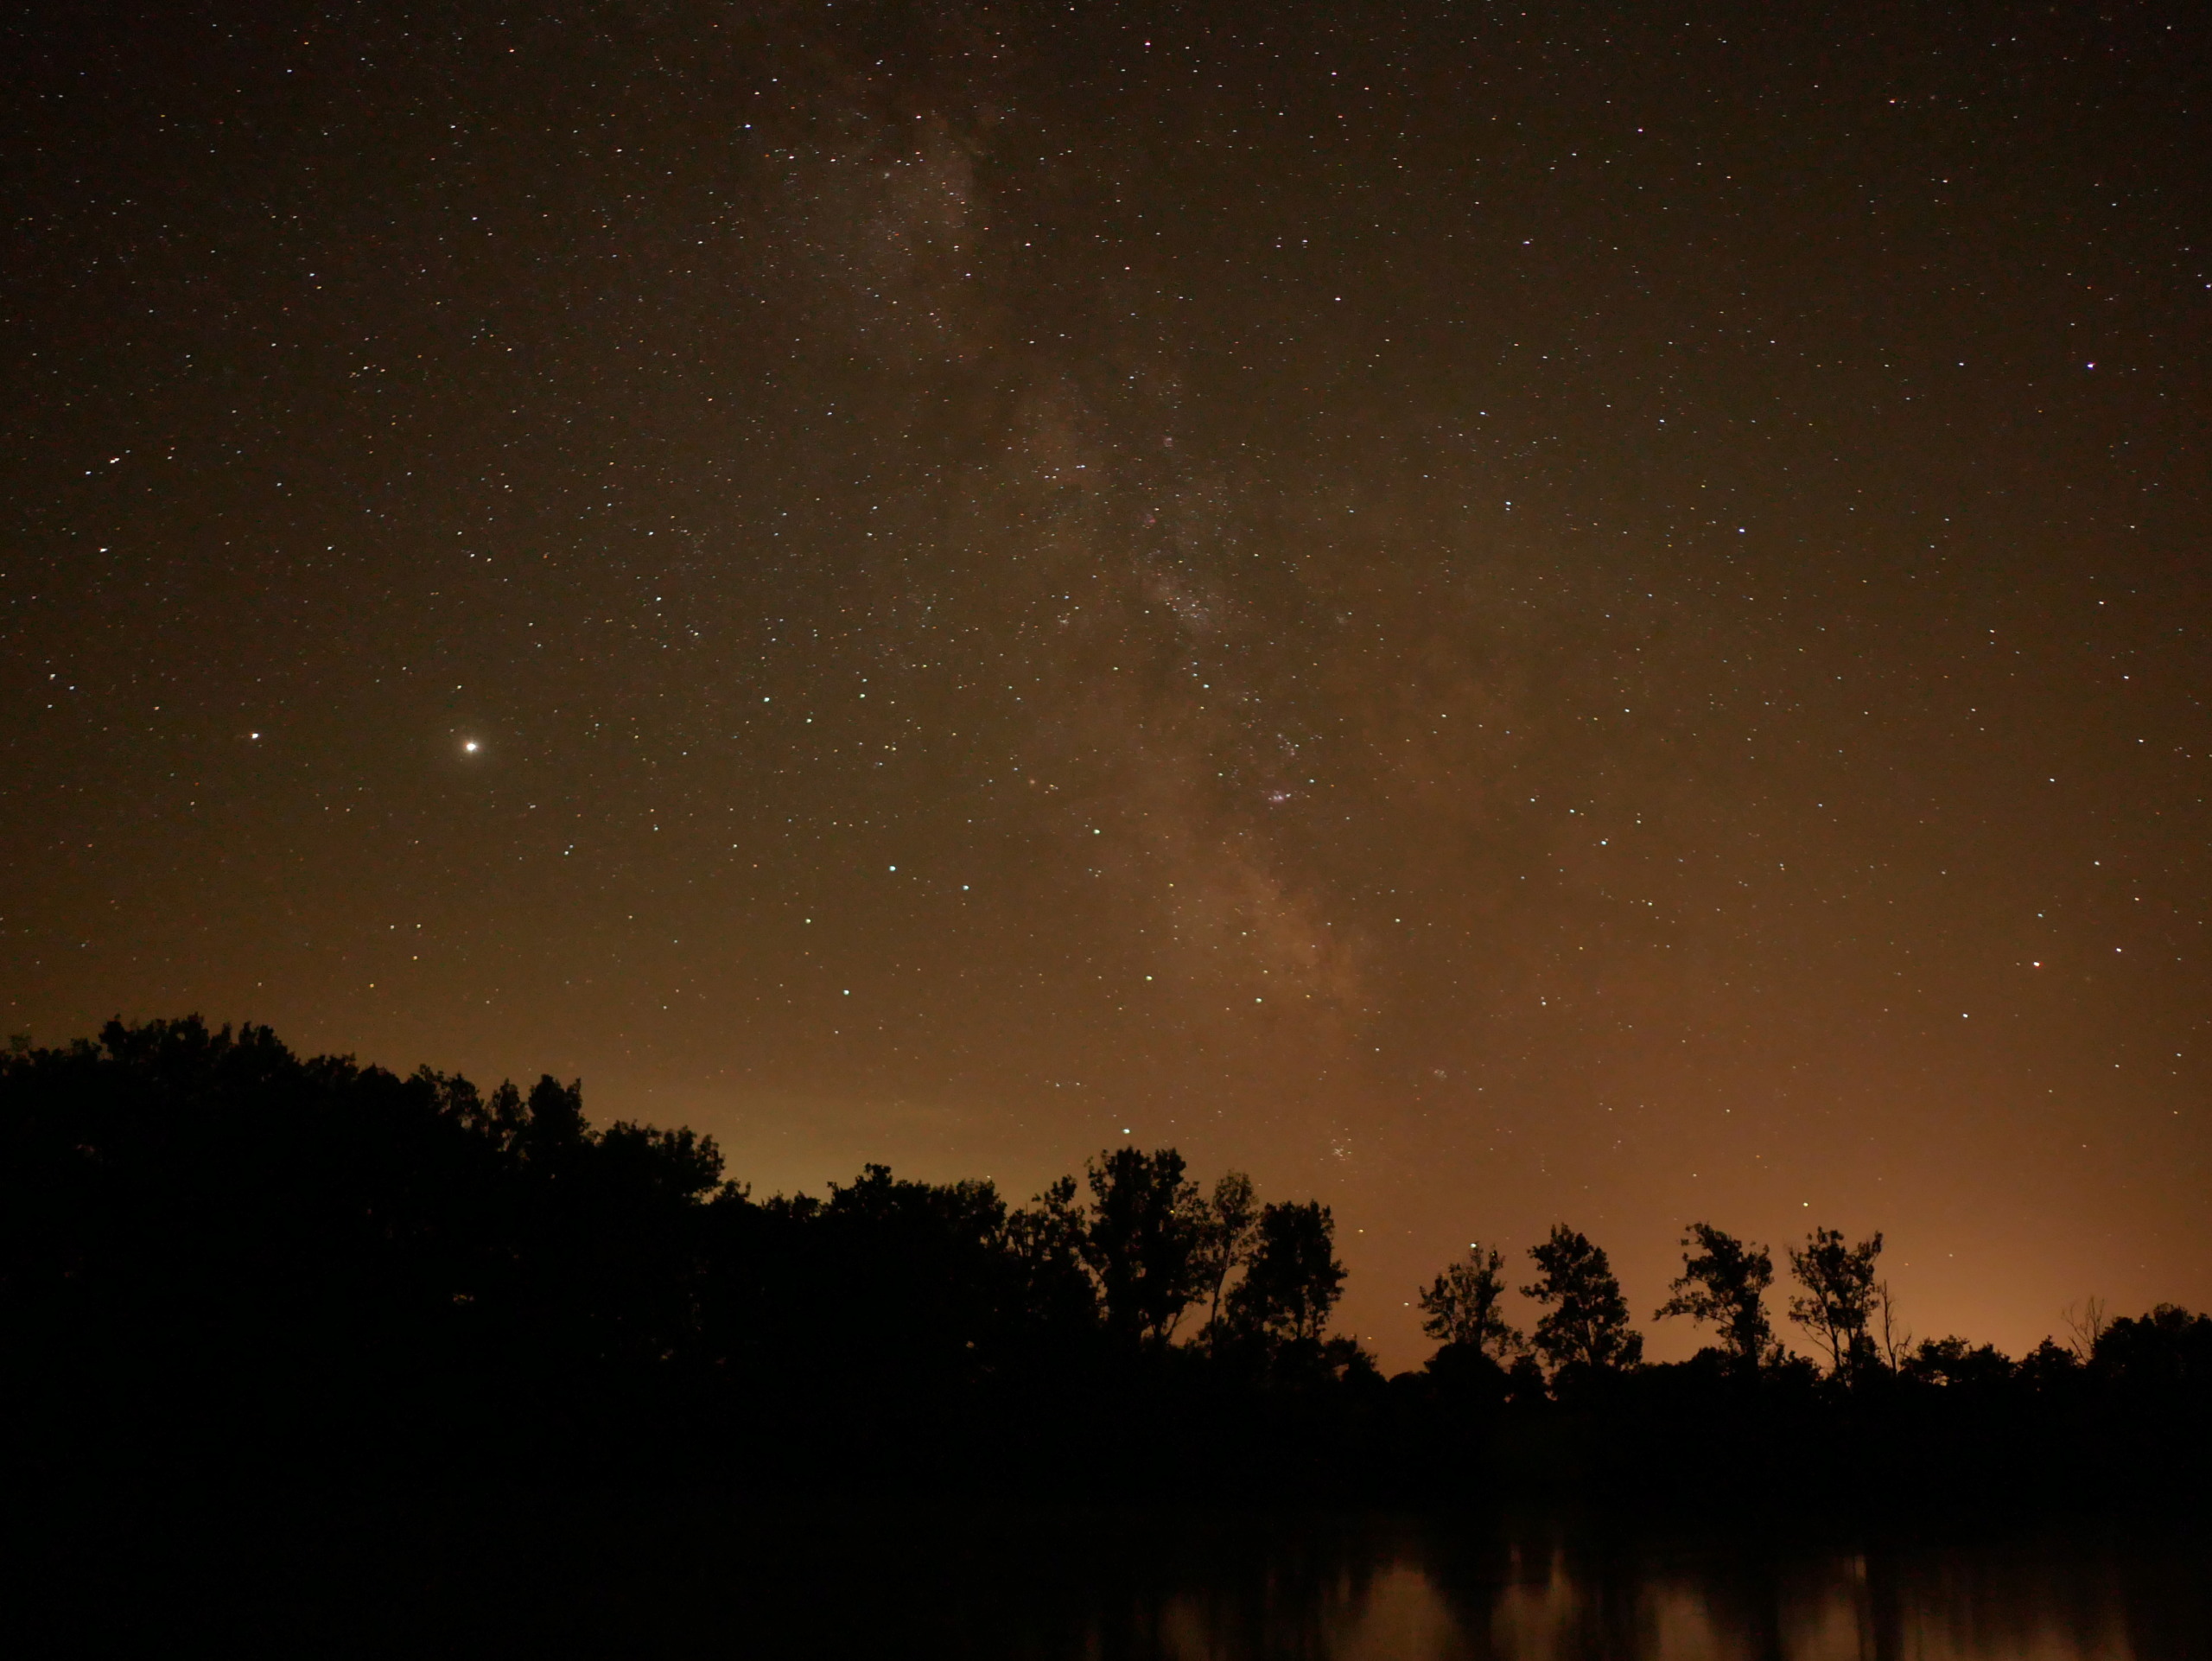 Hesitation objectif pour photo de nuit/voie lactée P1320410